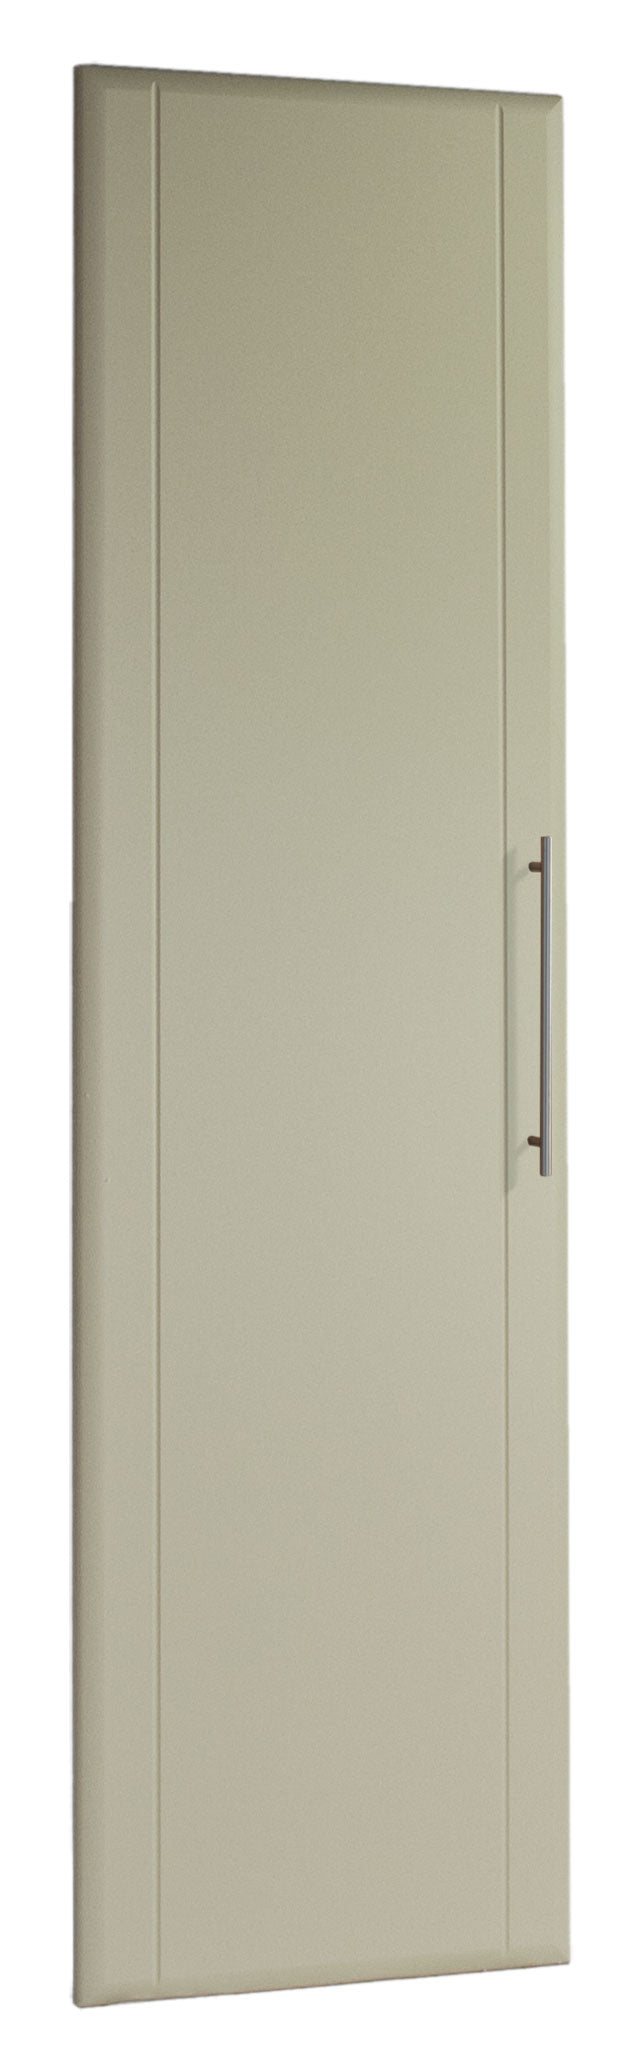 Made to measure Twinline Style cupboard door